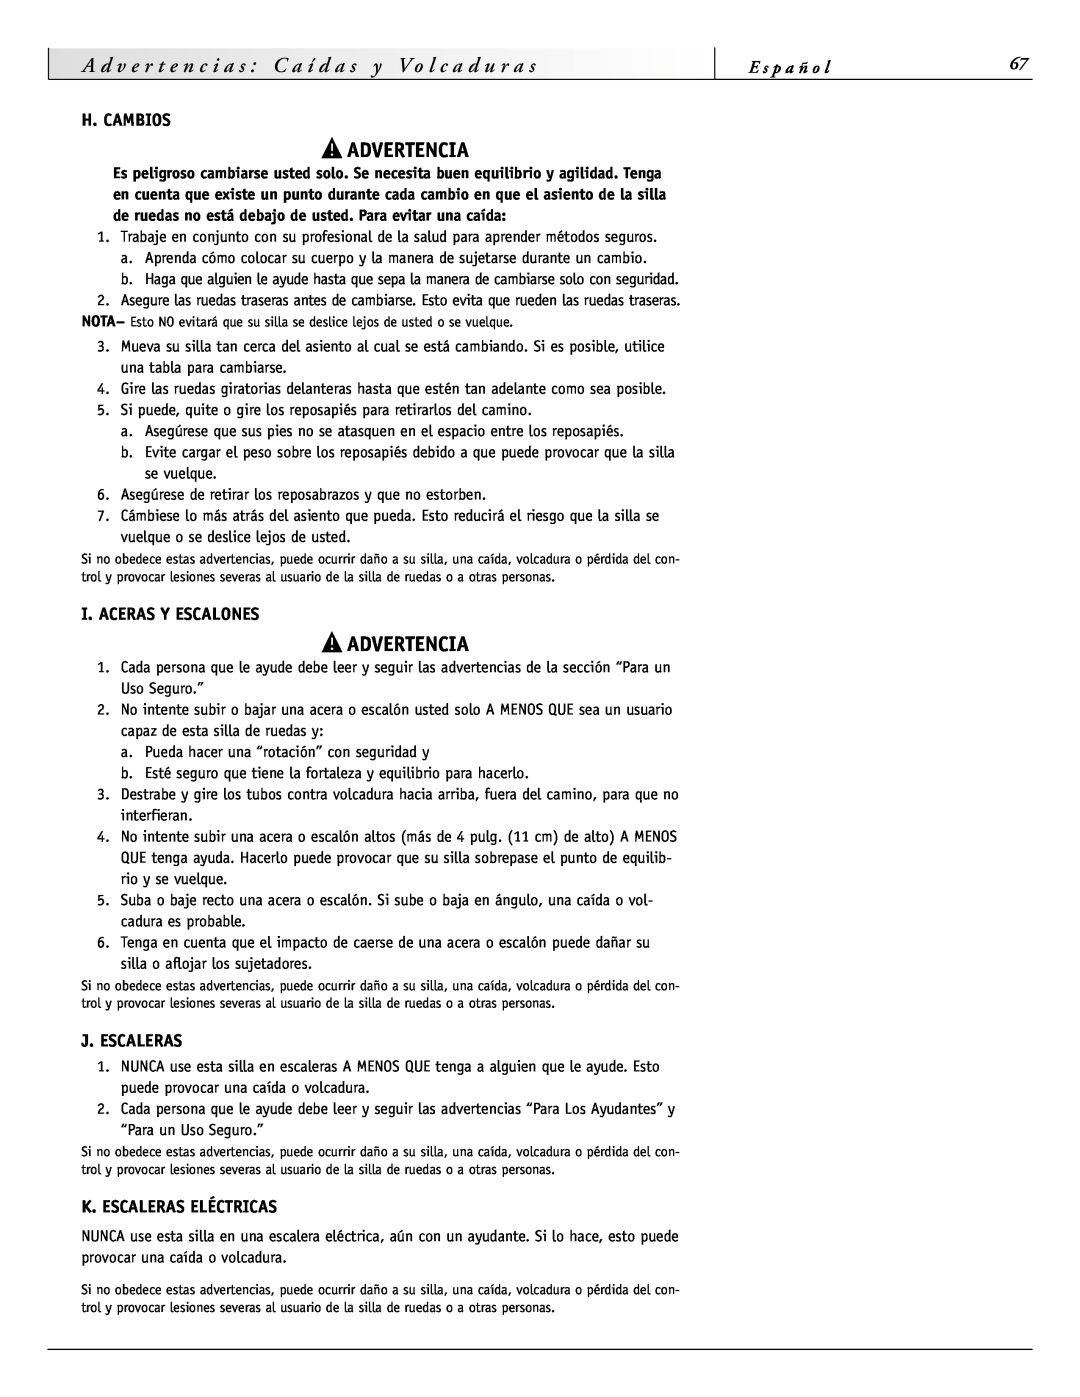 Sunrise Medical 2000 Series H. Cambios, I. Aceras Y Escalones, J. Escaleras, K. Escaleras Eléctricas, c i a, Advertencia 